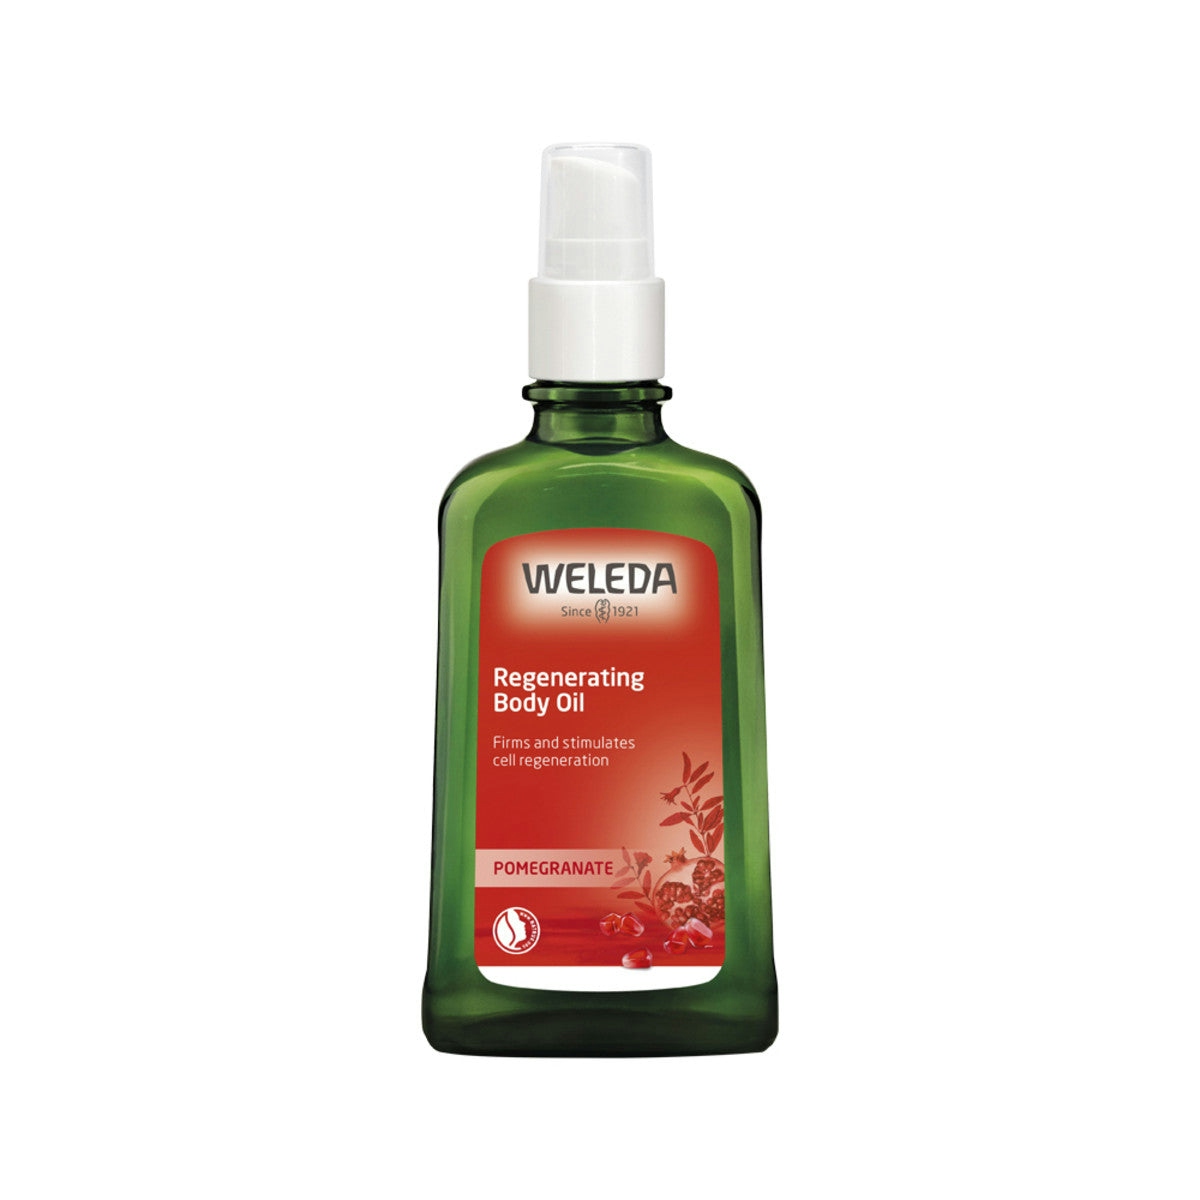 image of Weleda Body Oil Regenerating (Pomegranate) 100ml on white background